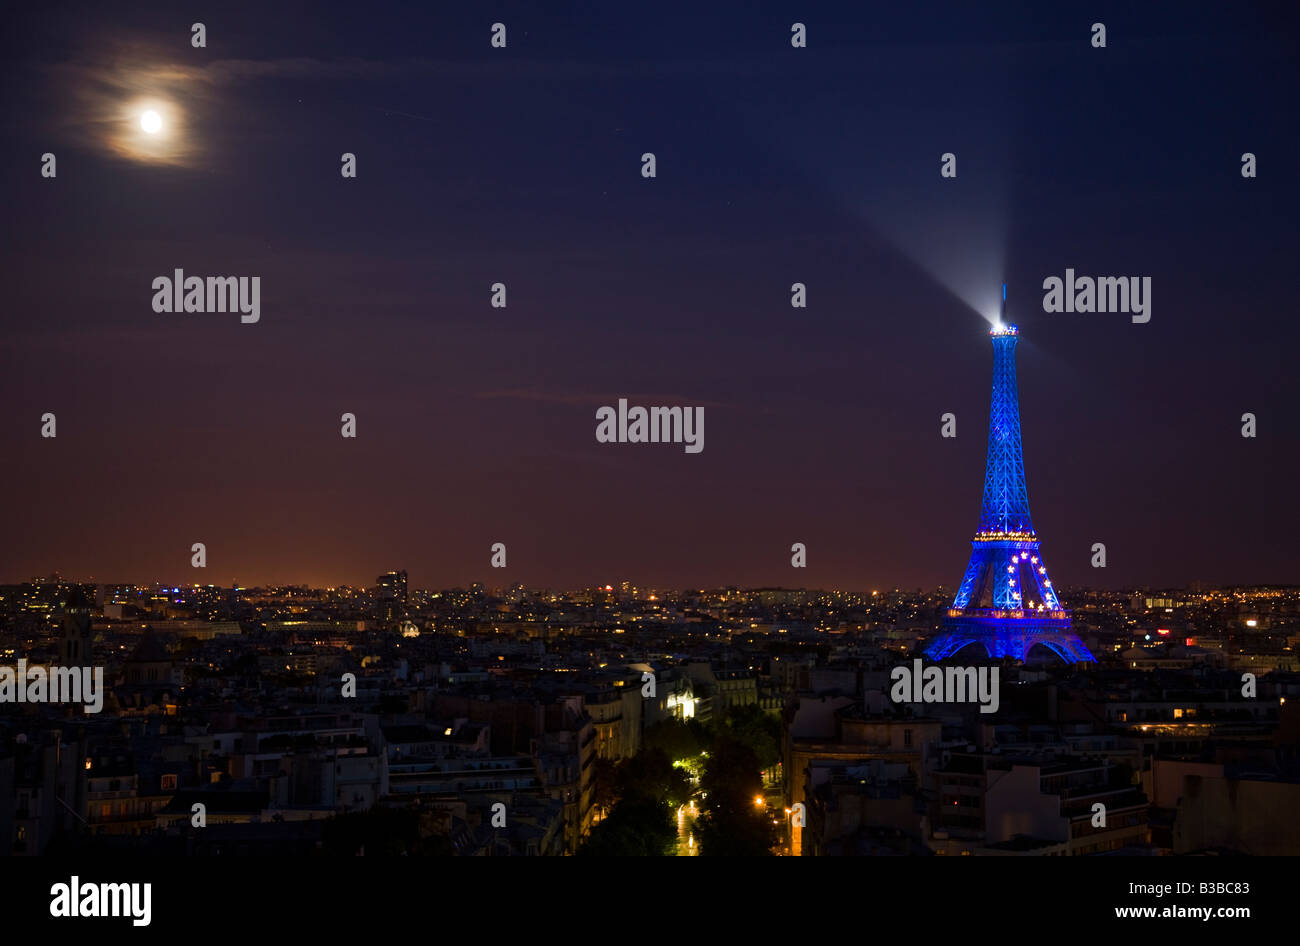 Célèbre attraction Tour Eiffel avec feux bleus au crépuscule rougeoyant pleine lune à travers les nuages vaporeux destination touristique Paris paysage urbain de nuit Banque D'Images